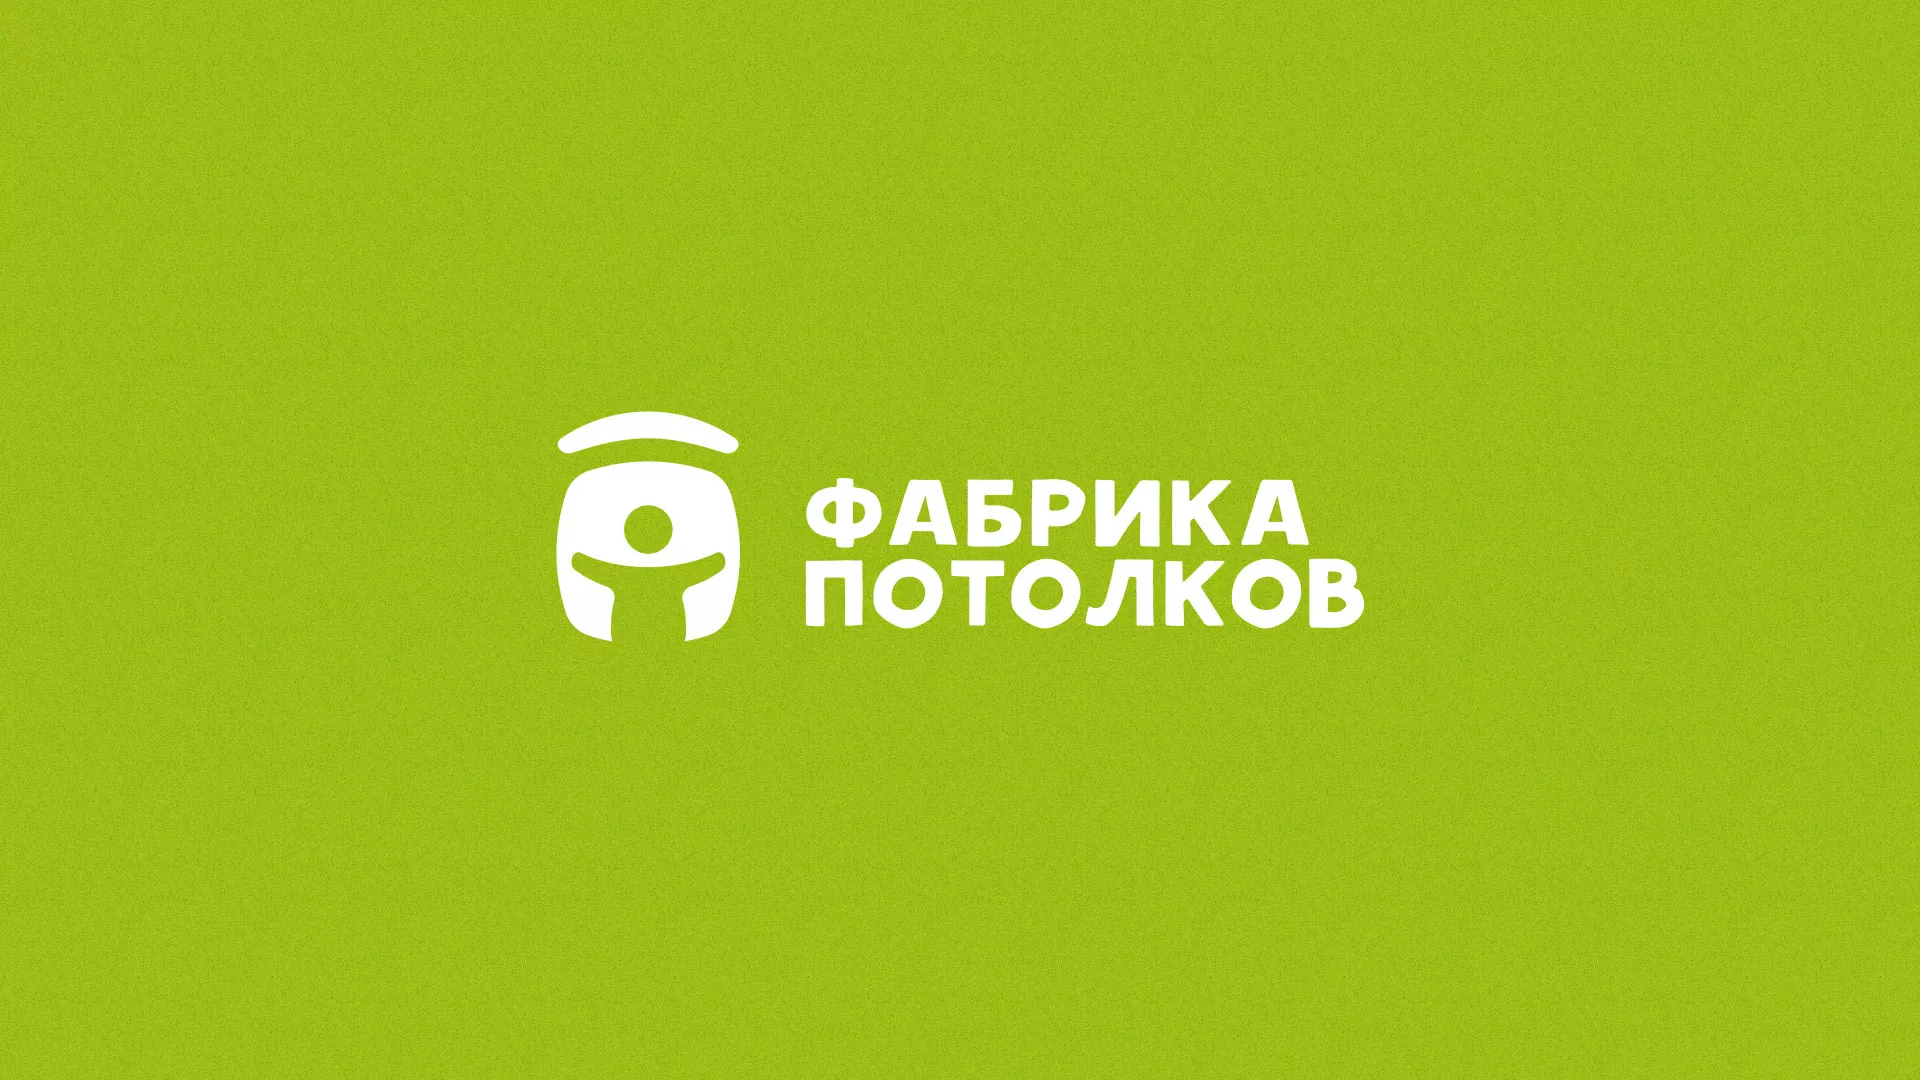 Разработка логотипа для производства натяжных потолков в Усть-Катаве